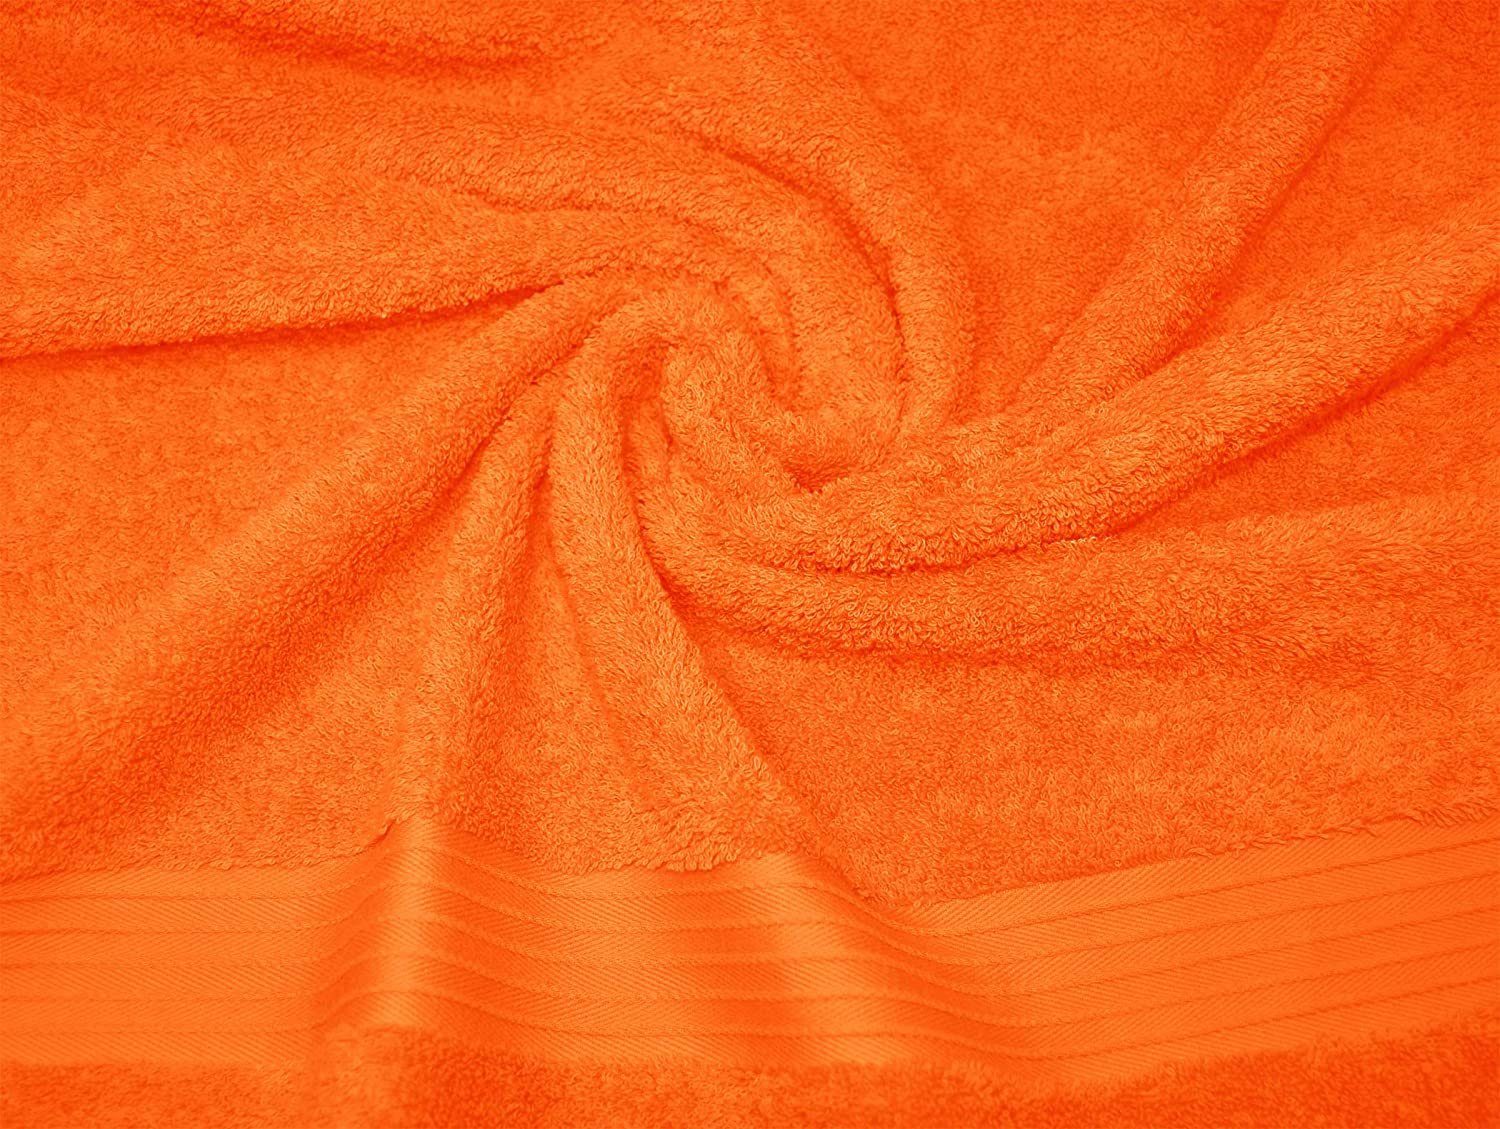 groß cm Linz, (1-St), Badehandtuch Lashuma Orange Frottee 70x200 Saunatuch